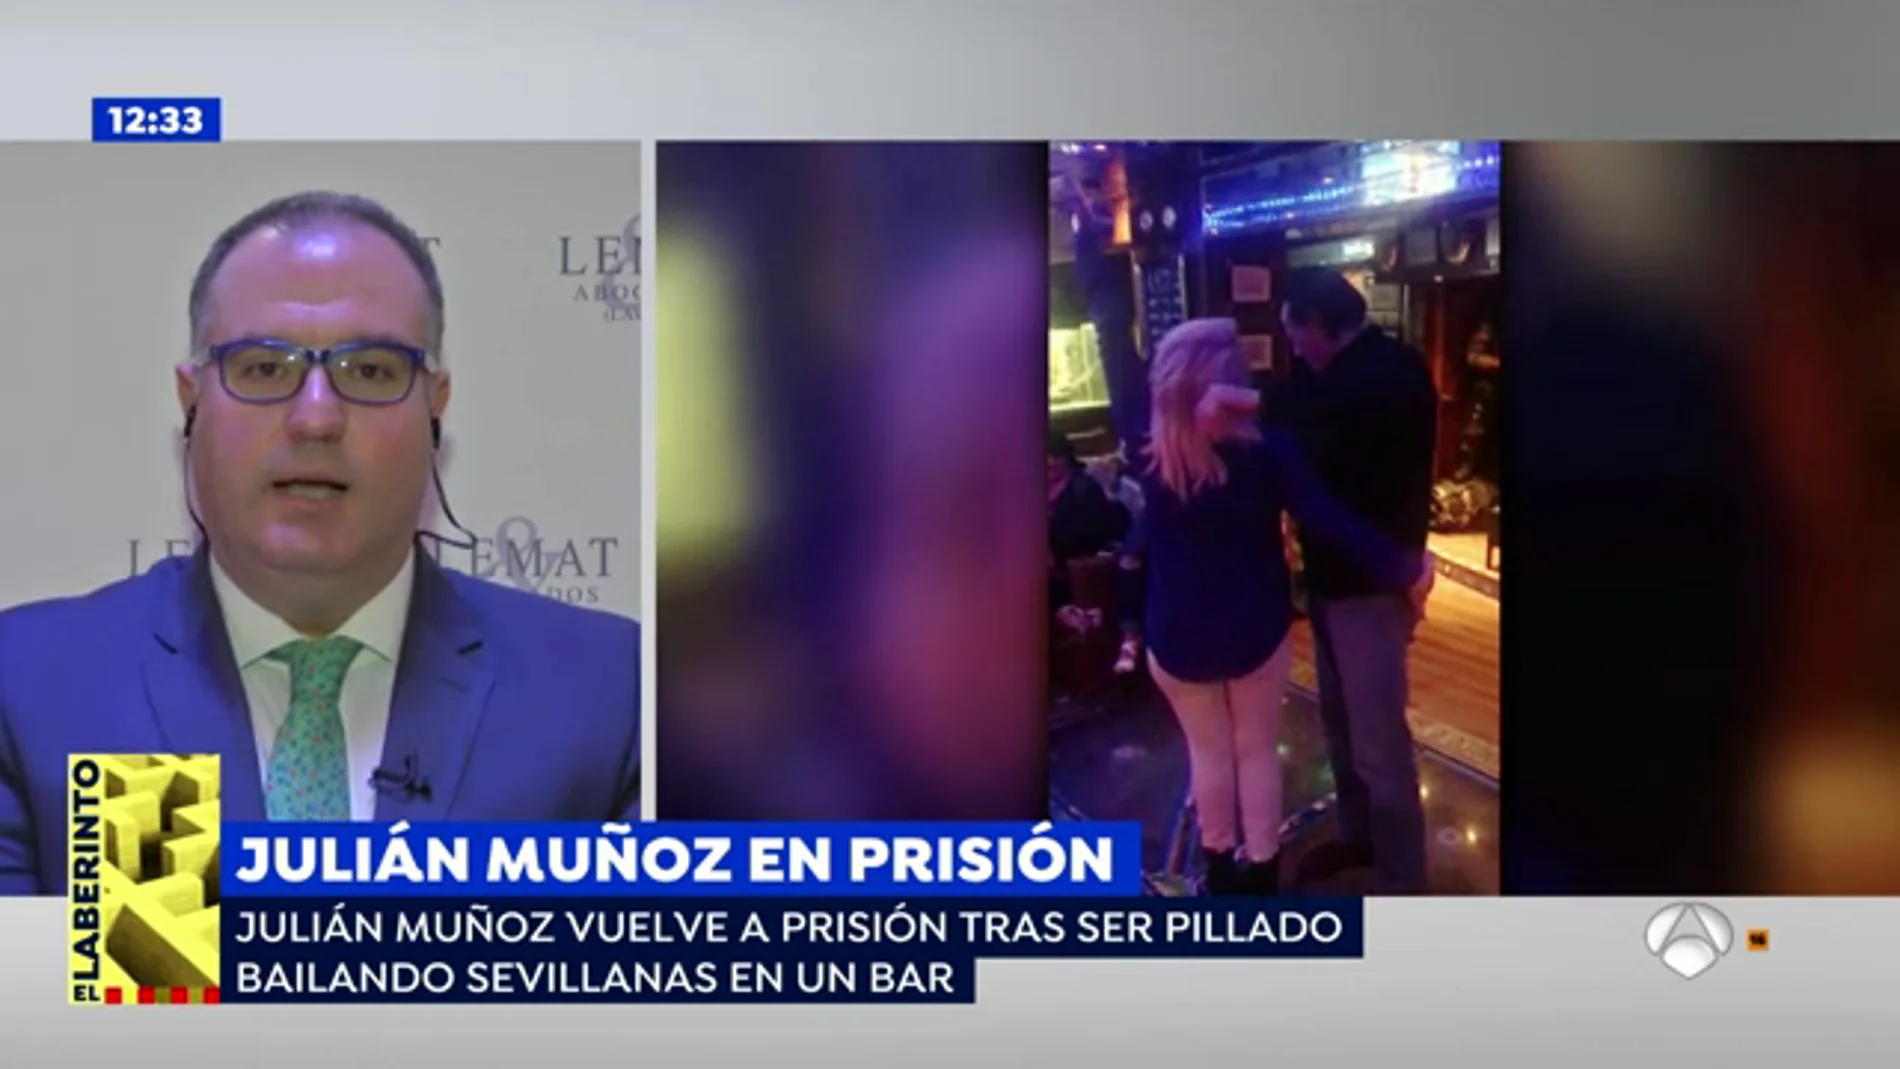  El abogado de Julián Muñoz, tras la nueva entrada a prisión del exalcalde: "No se está juzgando a la persona, sino al personaje"